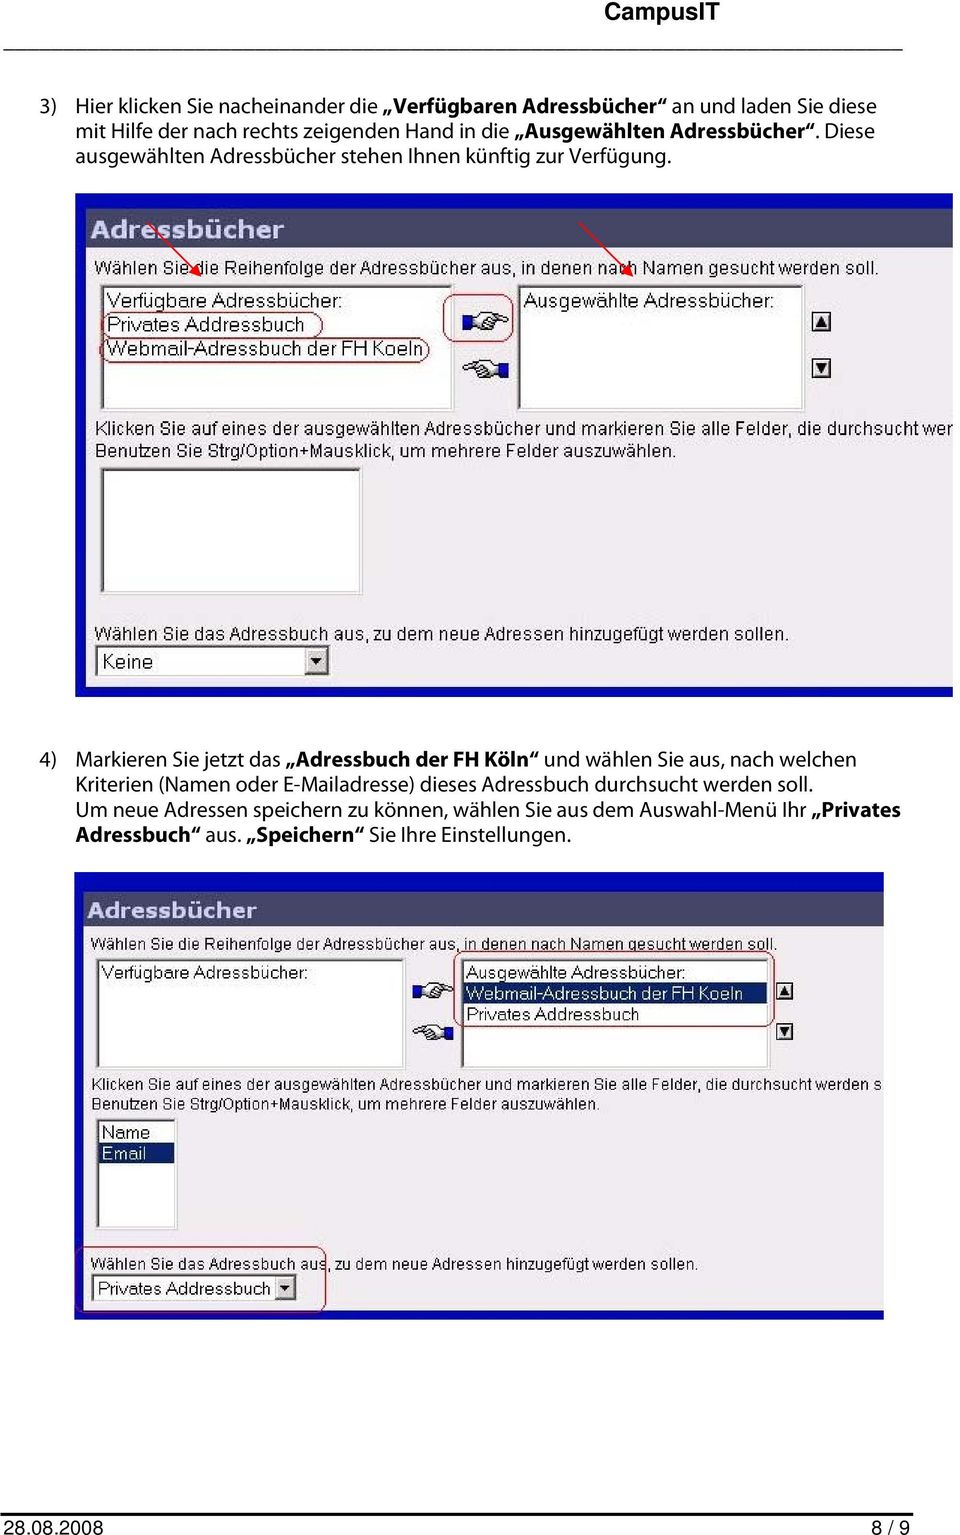 4) Markieren Sie jetzt das Adressbuch der FH Köln und wählen Sie aus, nach welchen Kriterien (Namen oder E-Mailadresse) dieses